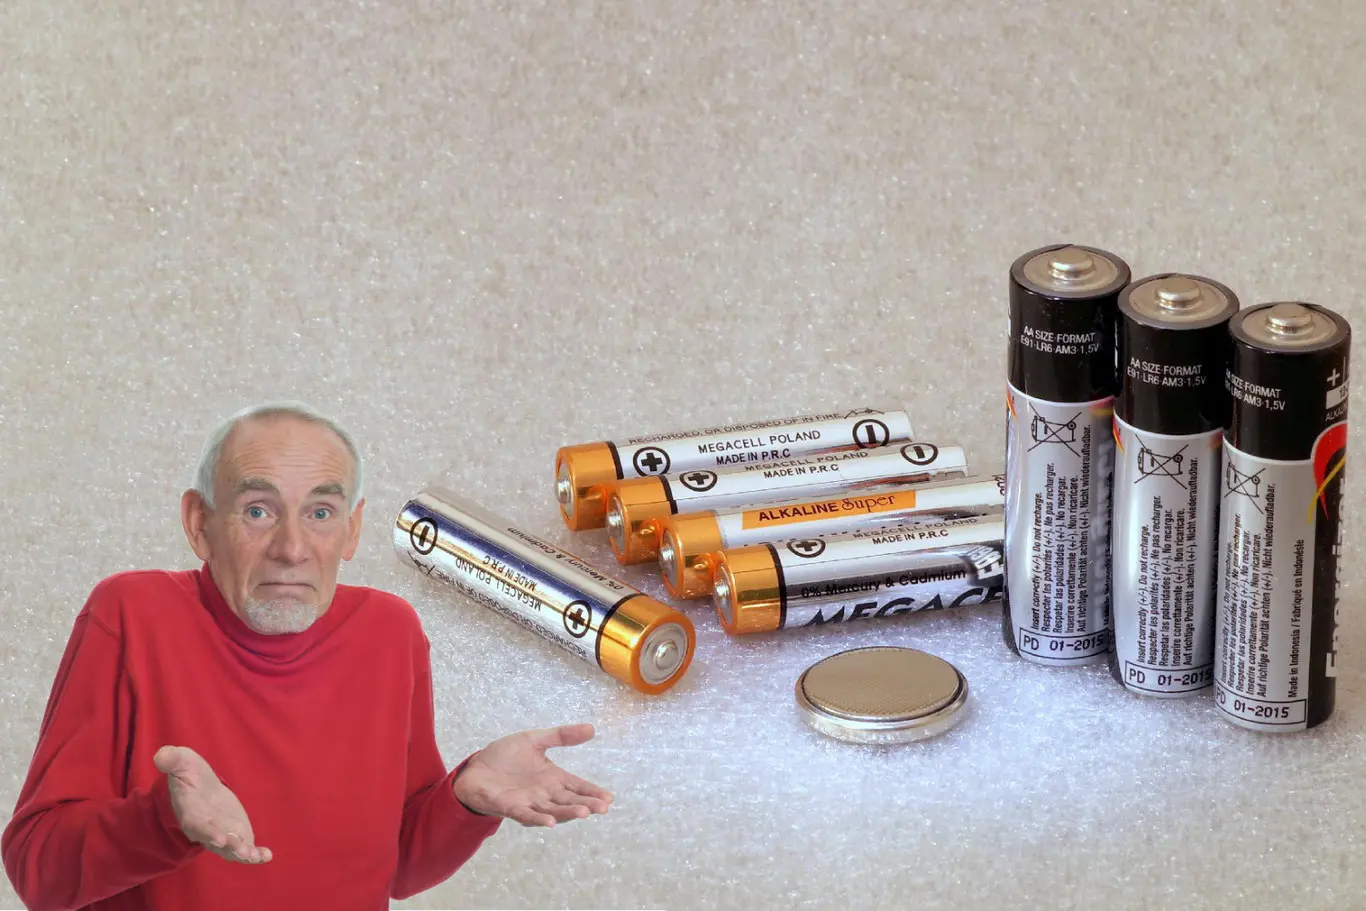 artefactos que usan baterias de litio - Qué equipos tienen baterías de litio